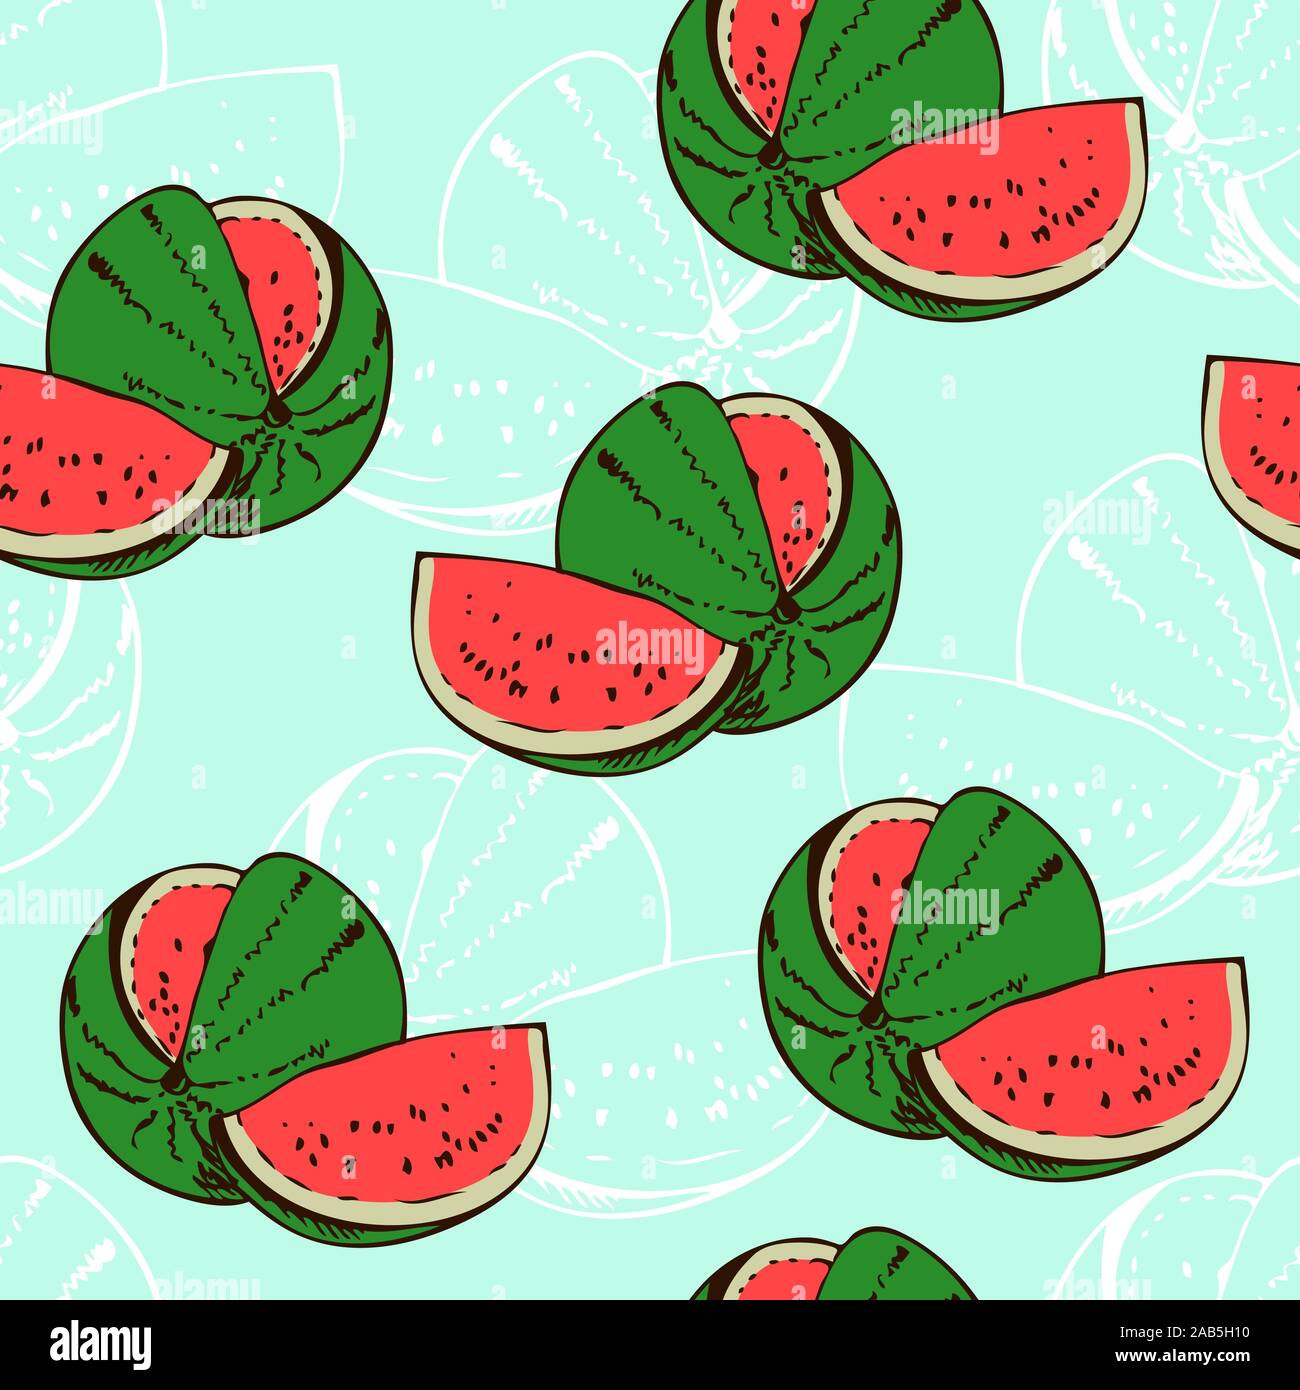 Wassermelone nahtlose Vektor Muster, Obst Hintergrund mit Hand gezeichnet Wassermelone Skizze Stock Vektor